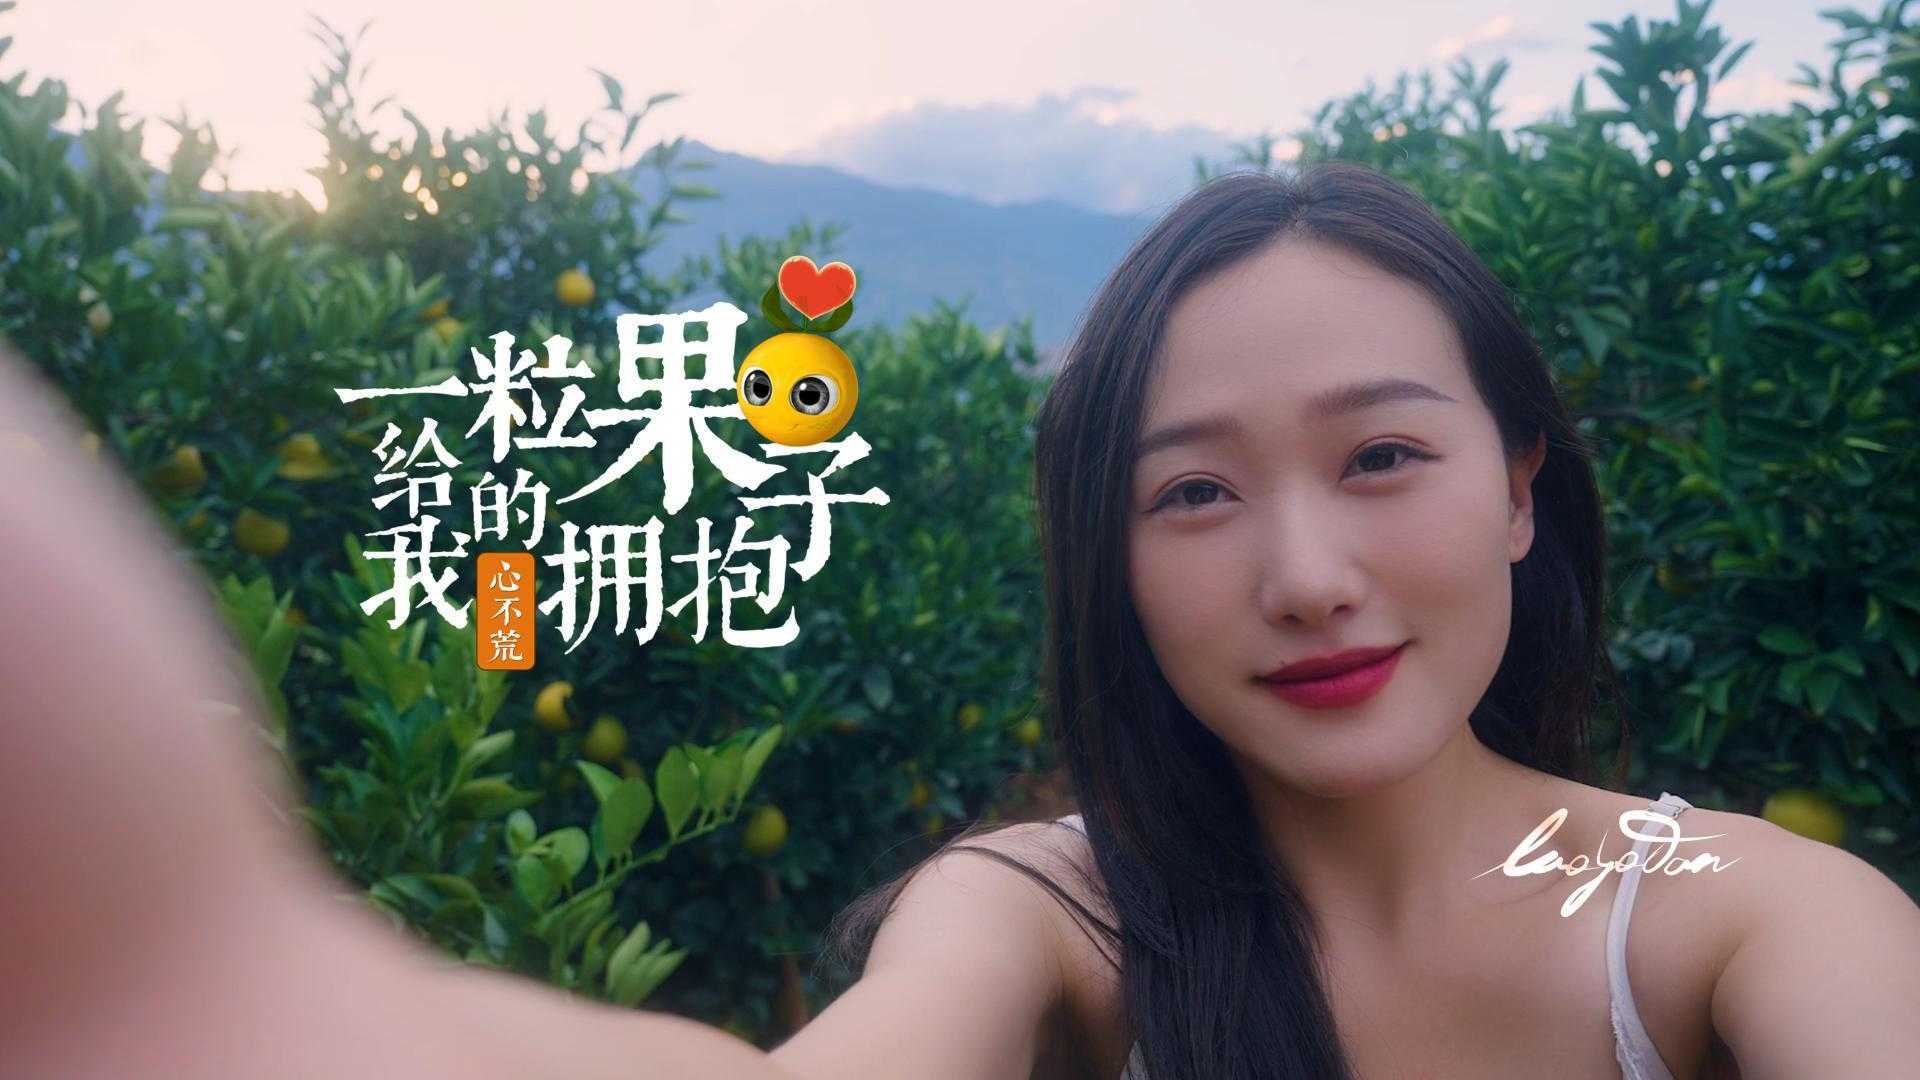 褚橙鲜果上市广告《一颗果子给我的拥抱》